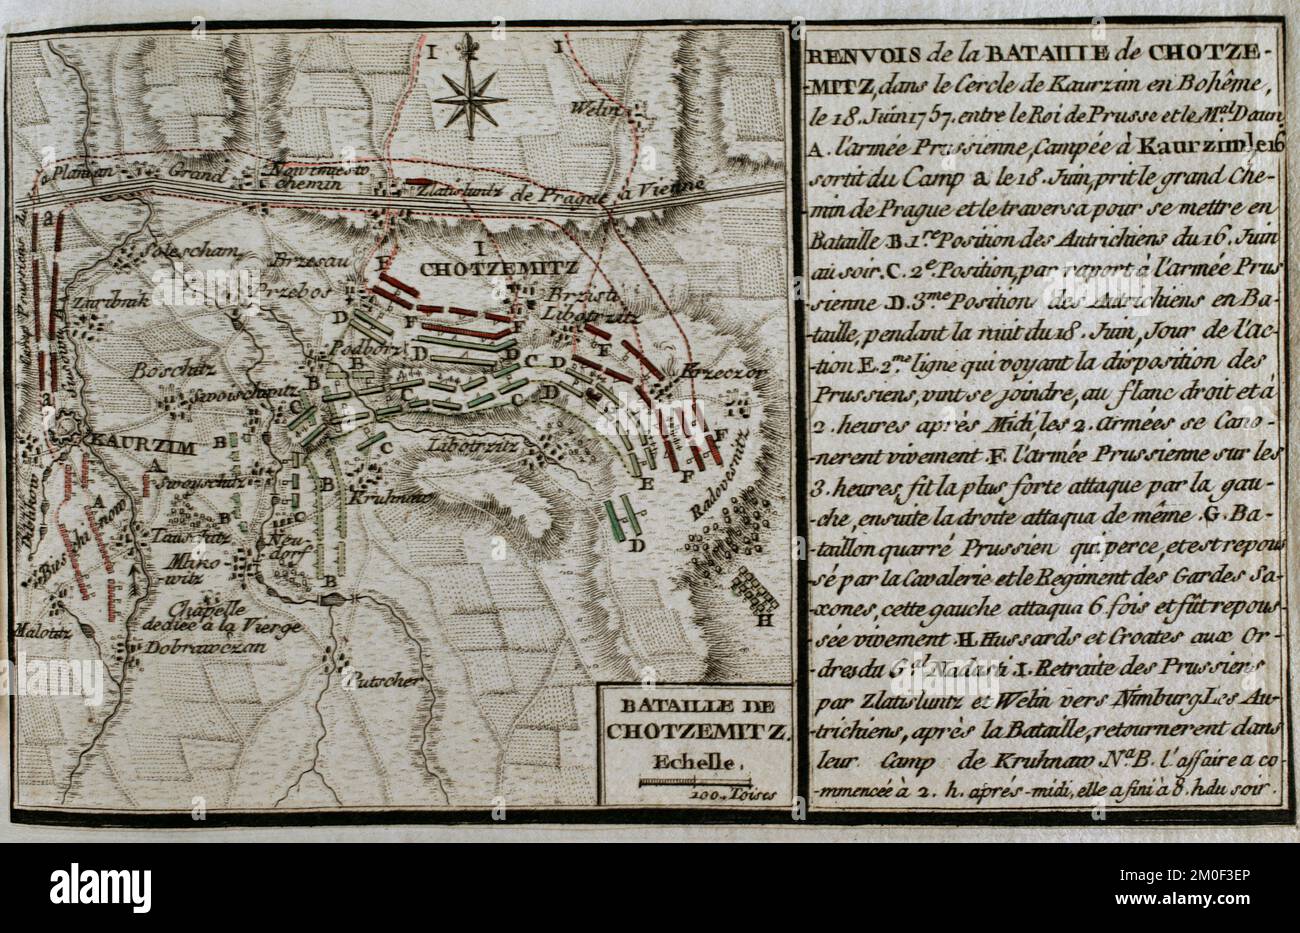 Guerra dei sette anni (1756-1763). Mappa della Battaglia di Chotzemitz (18 giugno 1757). Un esercito prussiano, comandato da Federico il Grande, combatté contro l'esercito austriaco, guidato dal maresciallo Daun, con una vittoria austriaca. Pubblicato nel 1765 dal cartografo Jean de Beaurain (1696-1771) come illustrazione della sua Grande carta della Germania, con gli eventi che si sono verificati durante la Guerra dei sette anni. Incisione e incisione. Edizione francese, 1765. Biblioteca storica militare di Barcellona (Biblioteca Histórico Militar de Barcelona). Catalogna. Spagna. Foto Stock